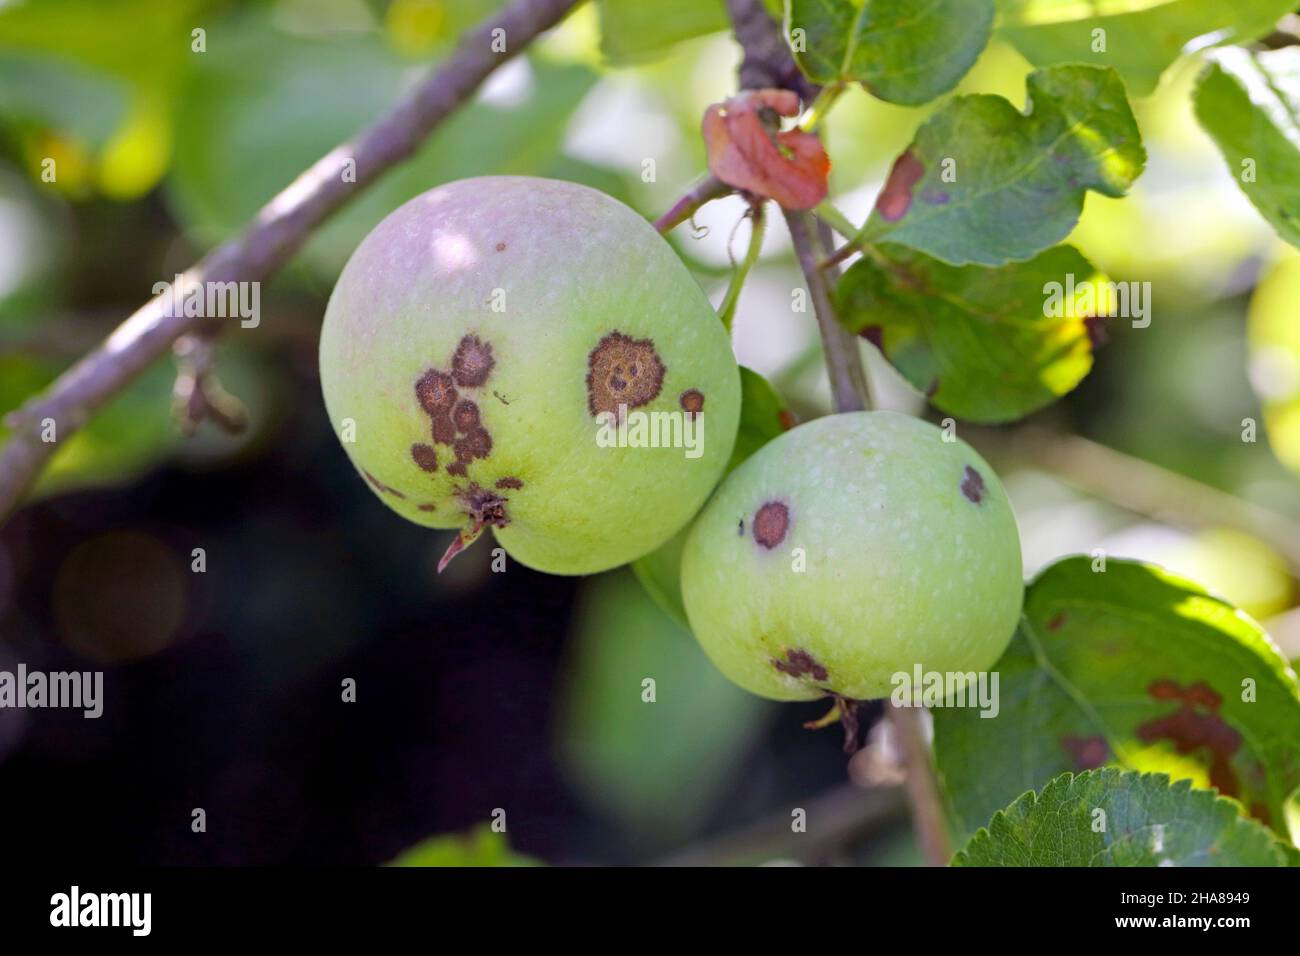 El costra de manzana es una enfermedad común de las plantas de la familia de las rosas (Rosaceae) causada por el hongo ascomycete Venturia inaequalis. Foto de stock